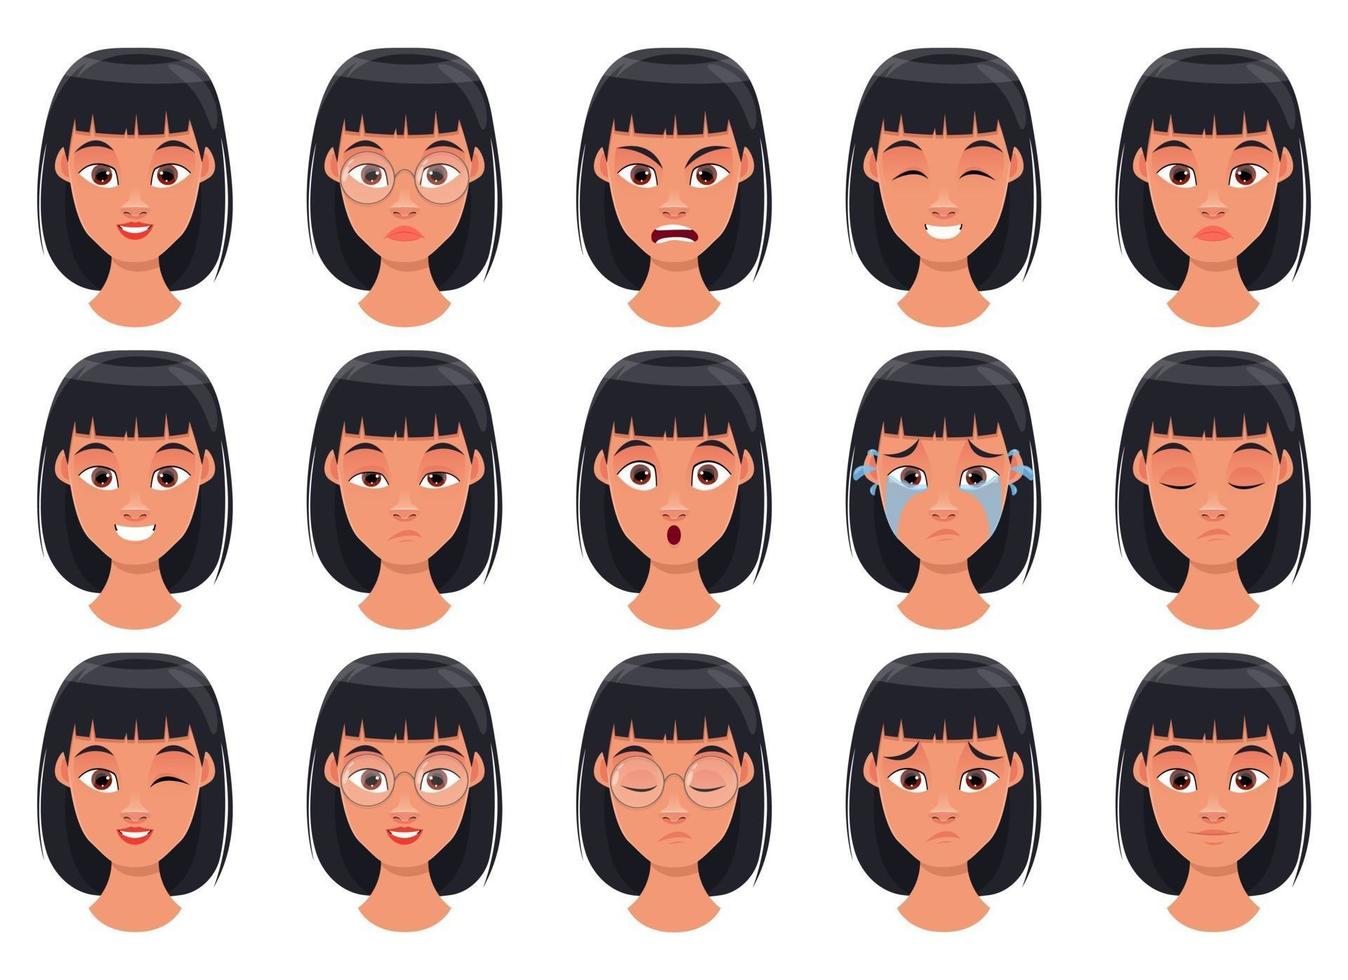 vrouw gezicht expressie vector ontwerp illustratie geïsoleerd op een witte achtergrond